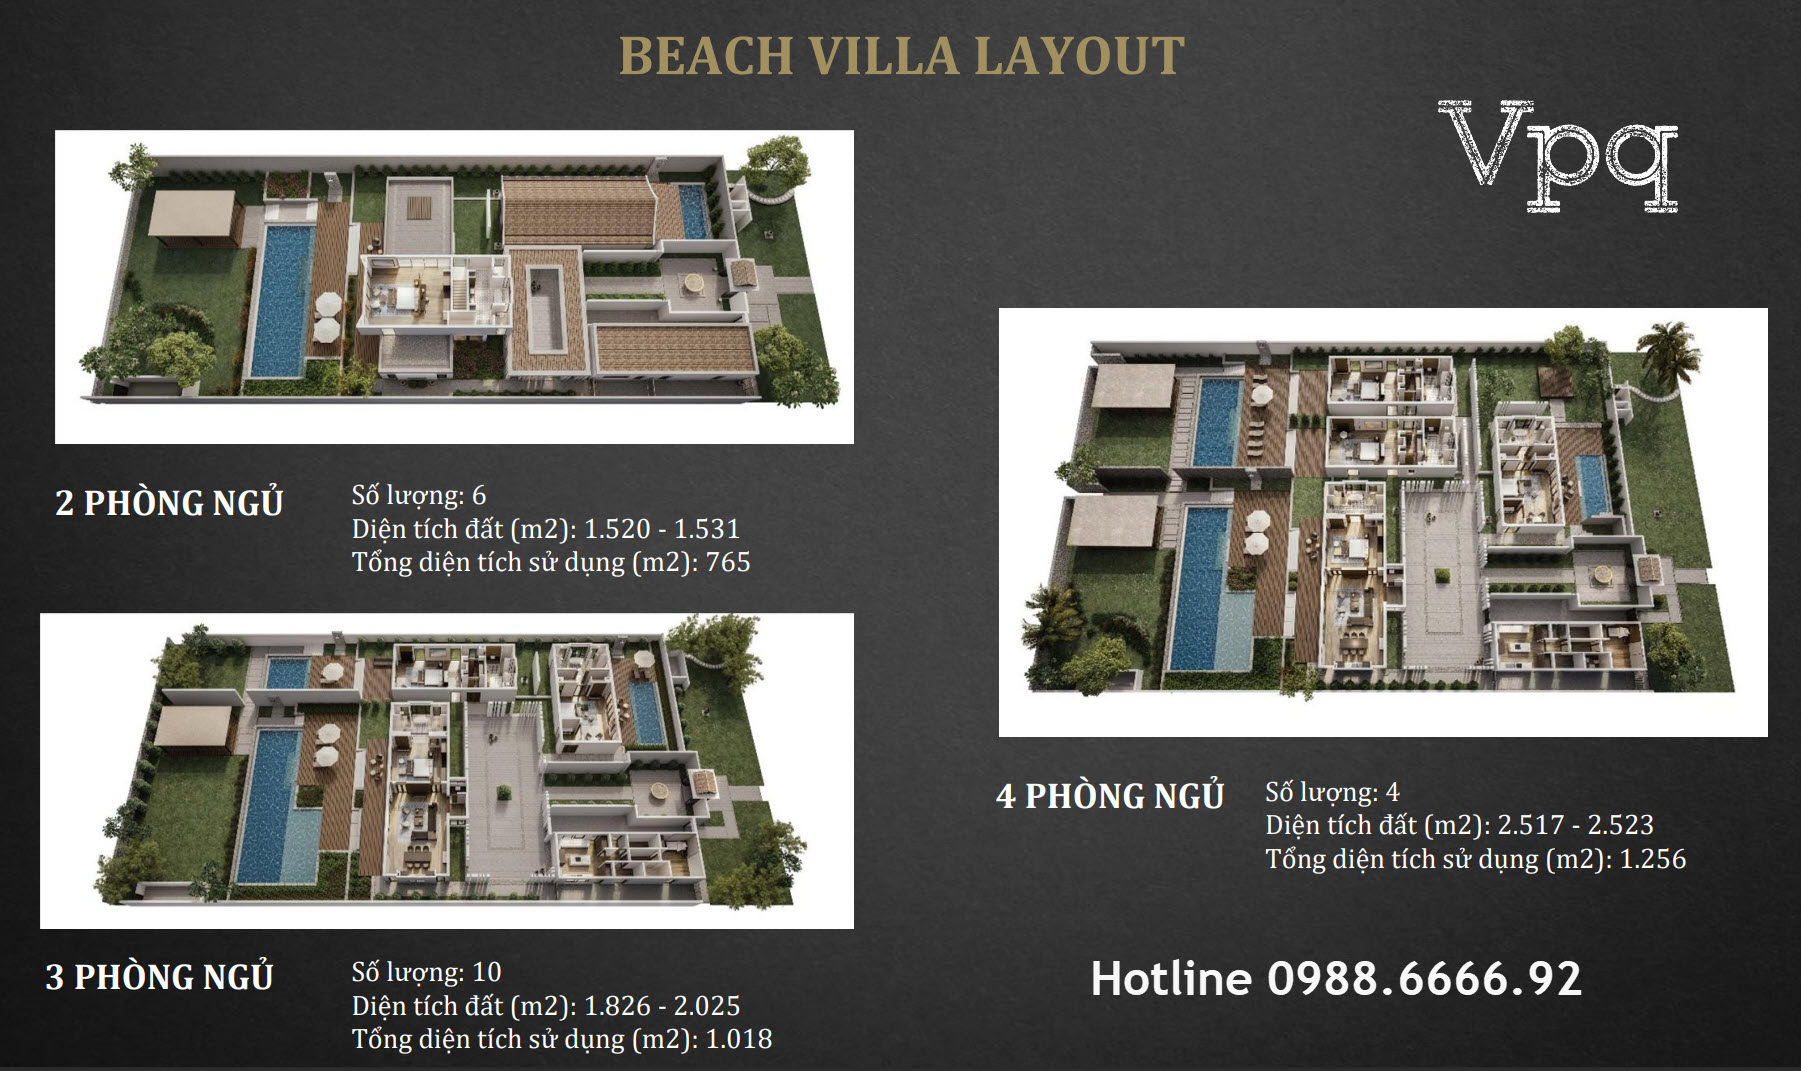 Beach Villa Layout